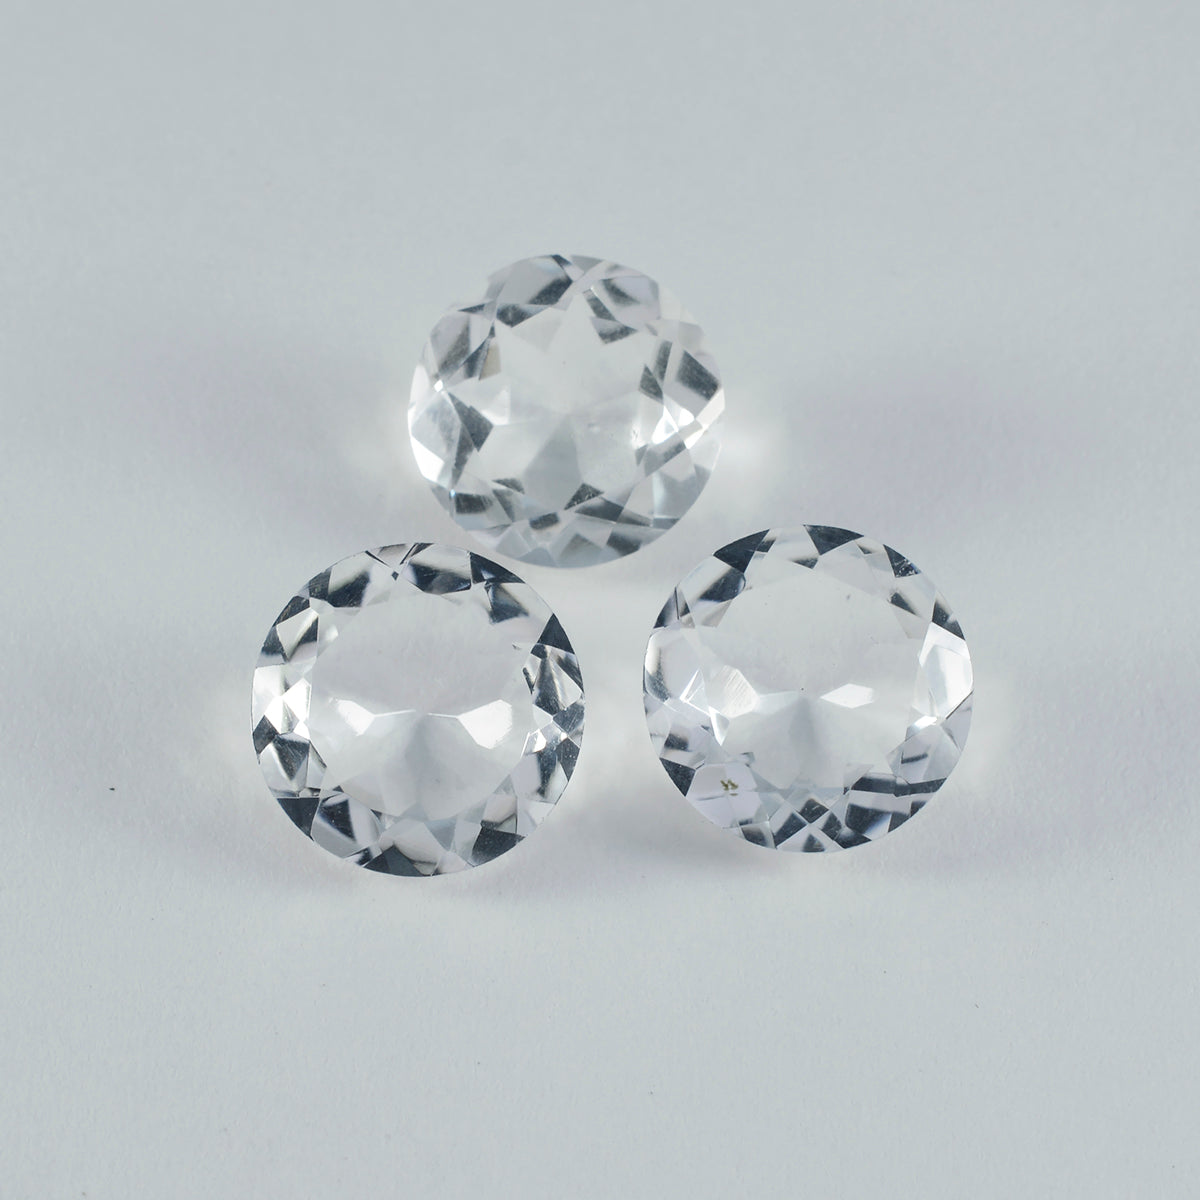 Riyogems 1 pieza de cuarzo de cristal blanco facetado 15x15 mm forma redonda hermosa piedra preciosa de calidad